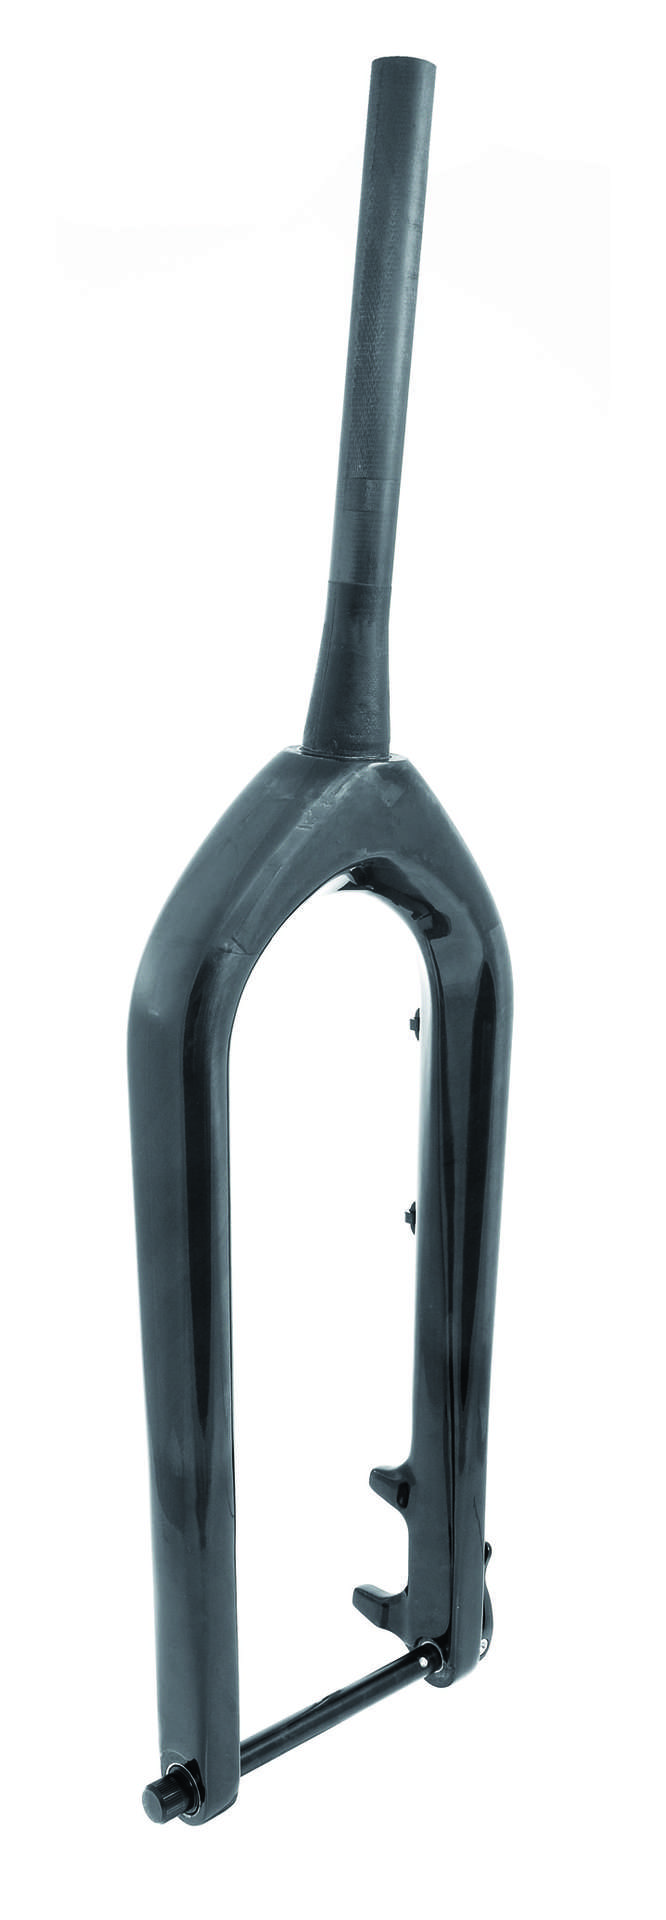 Inspire Fatbike Voorvork Full Carbon Tapered 26 inch Zwart